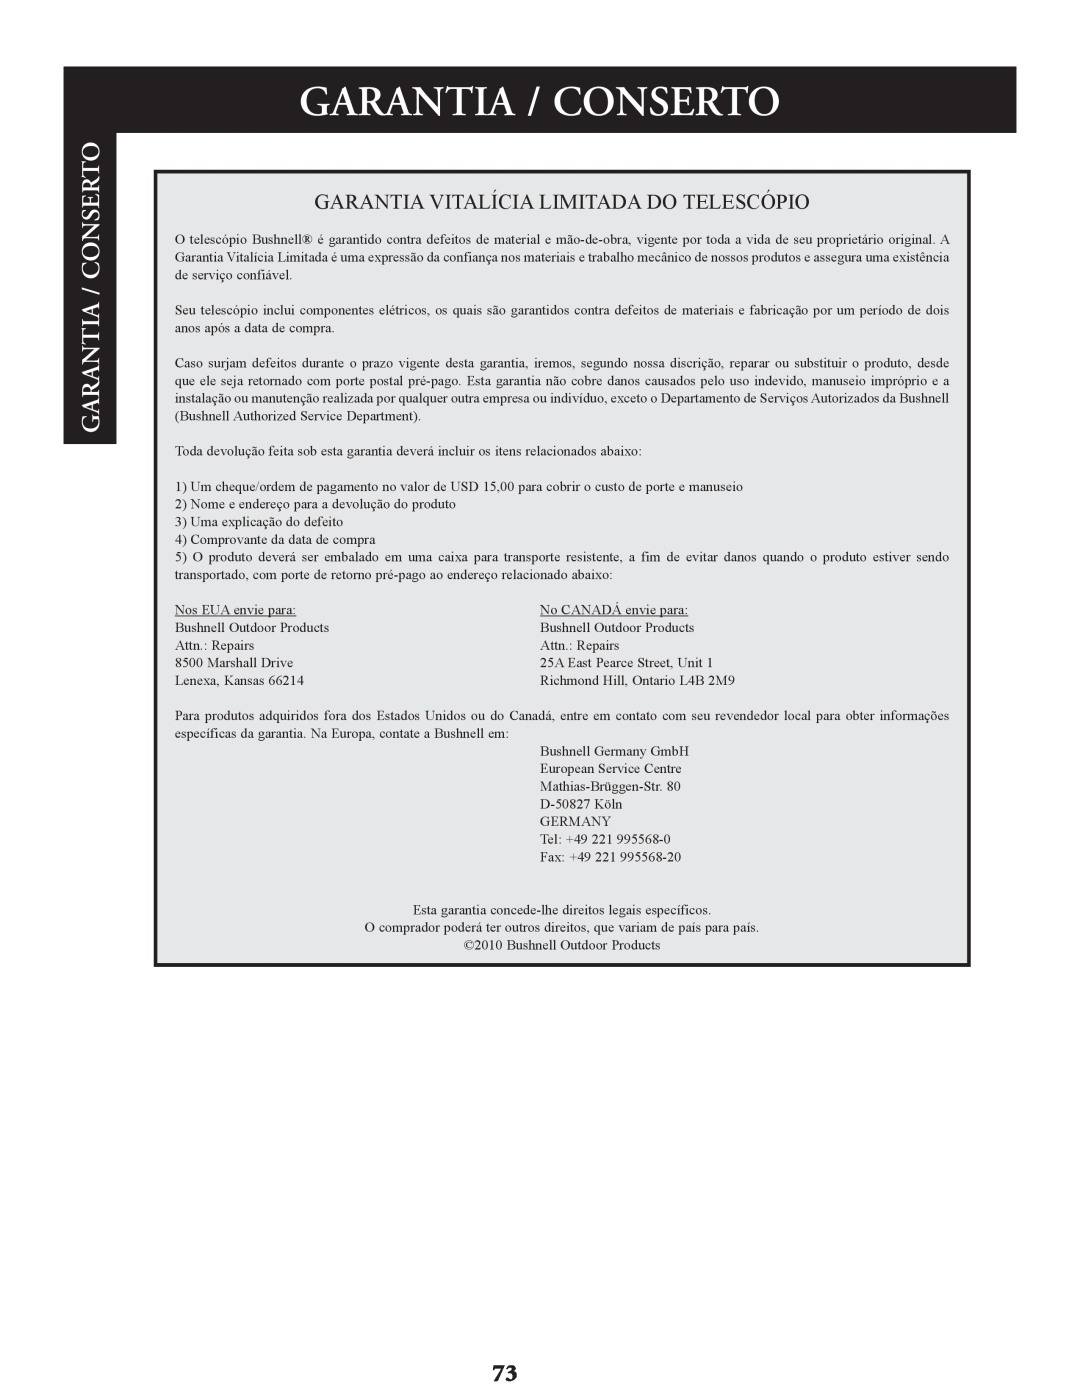 Bushnell 78-9930, 78-9945, 78-9970 instruction manual Garantia / Conserto 